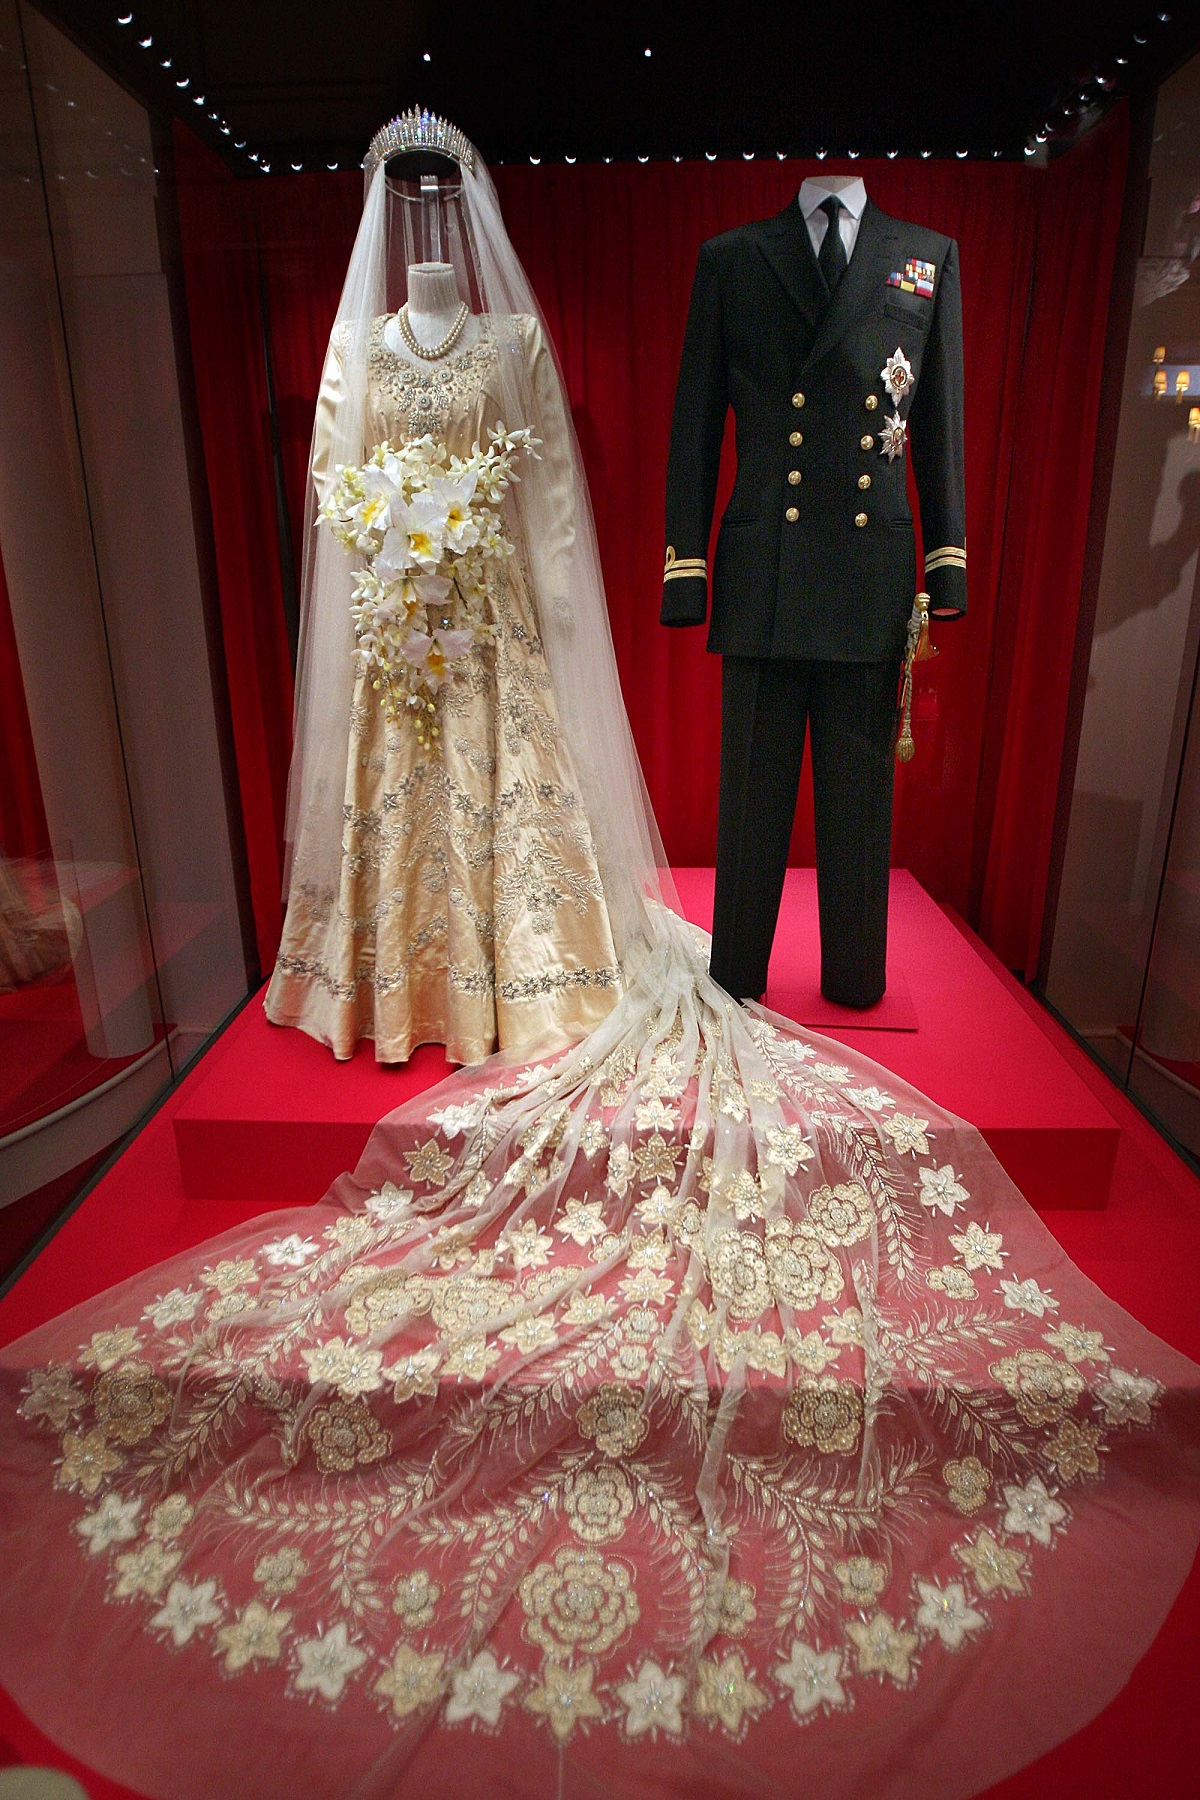 Rochia de mireasă purtată de către REgina Elisabeta și costumul de mire al Prințului Philip la nunta lor din 1957 expuse la o expoziție de la Palatul Buckingham în 2007 cu ocazia aniversării a 60 de ani a căsătoriei